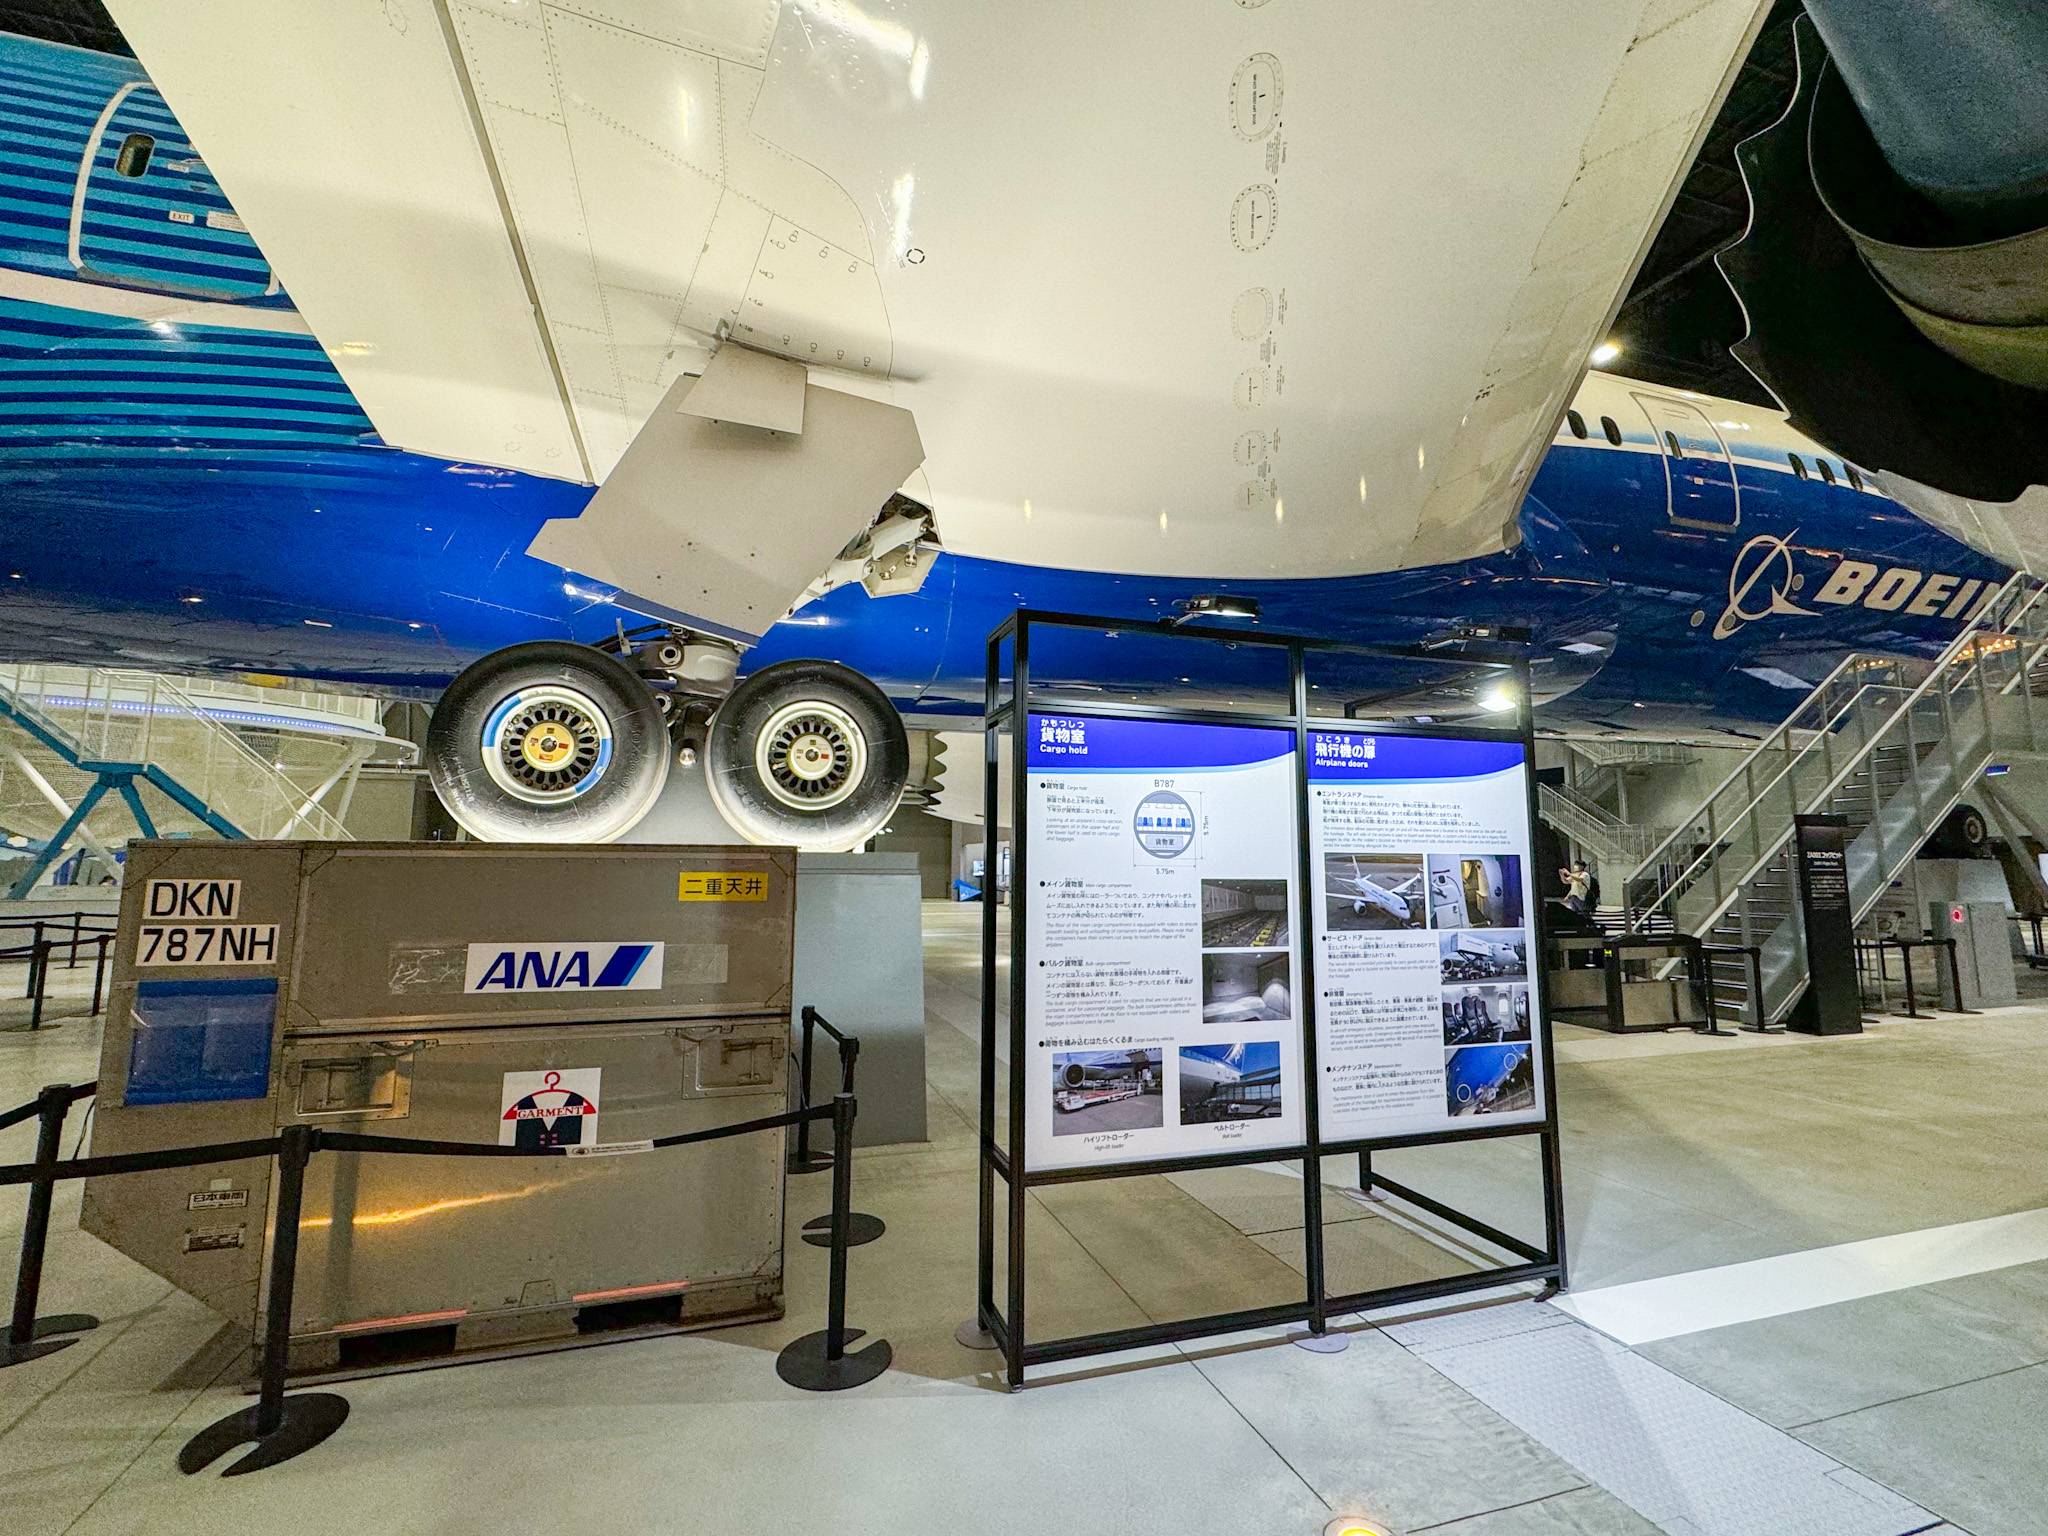 名古屋自由行 現場有不同展板介紹波音和中部國際機場的歷史。